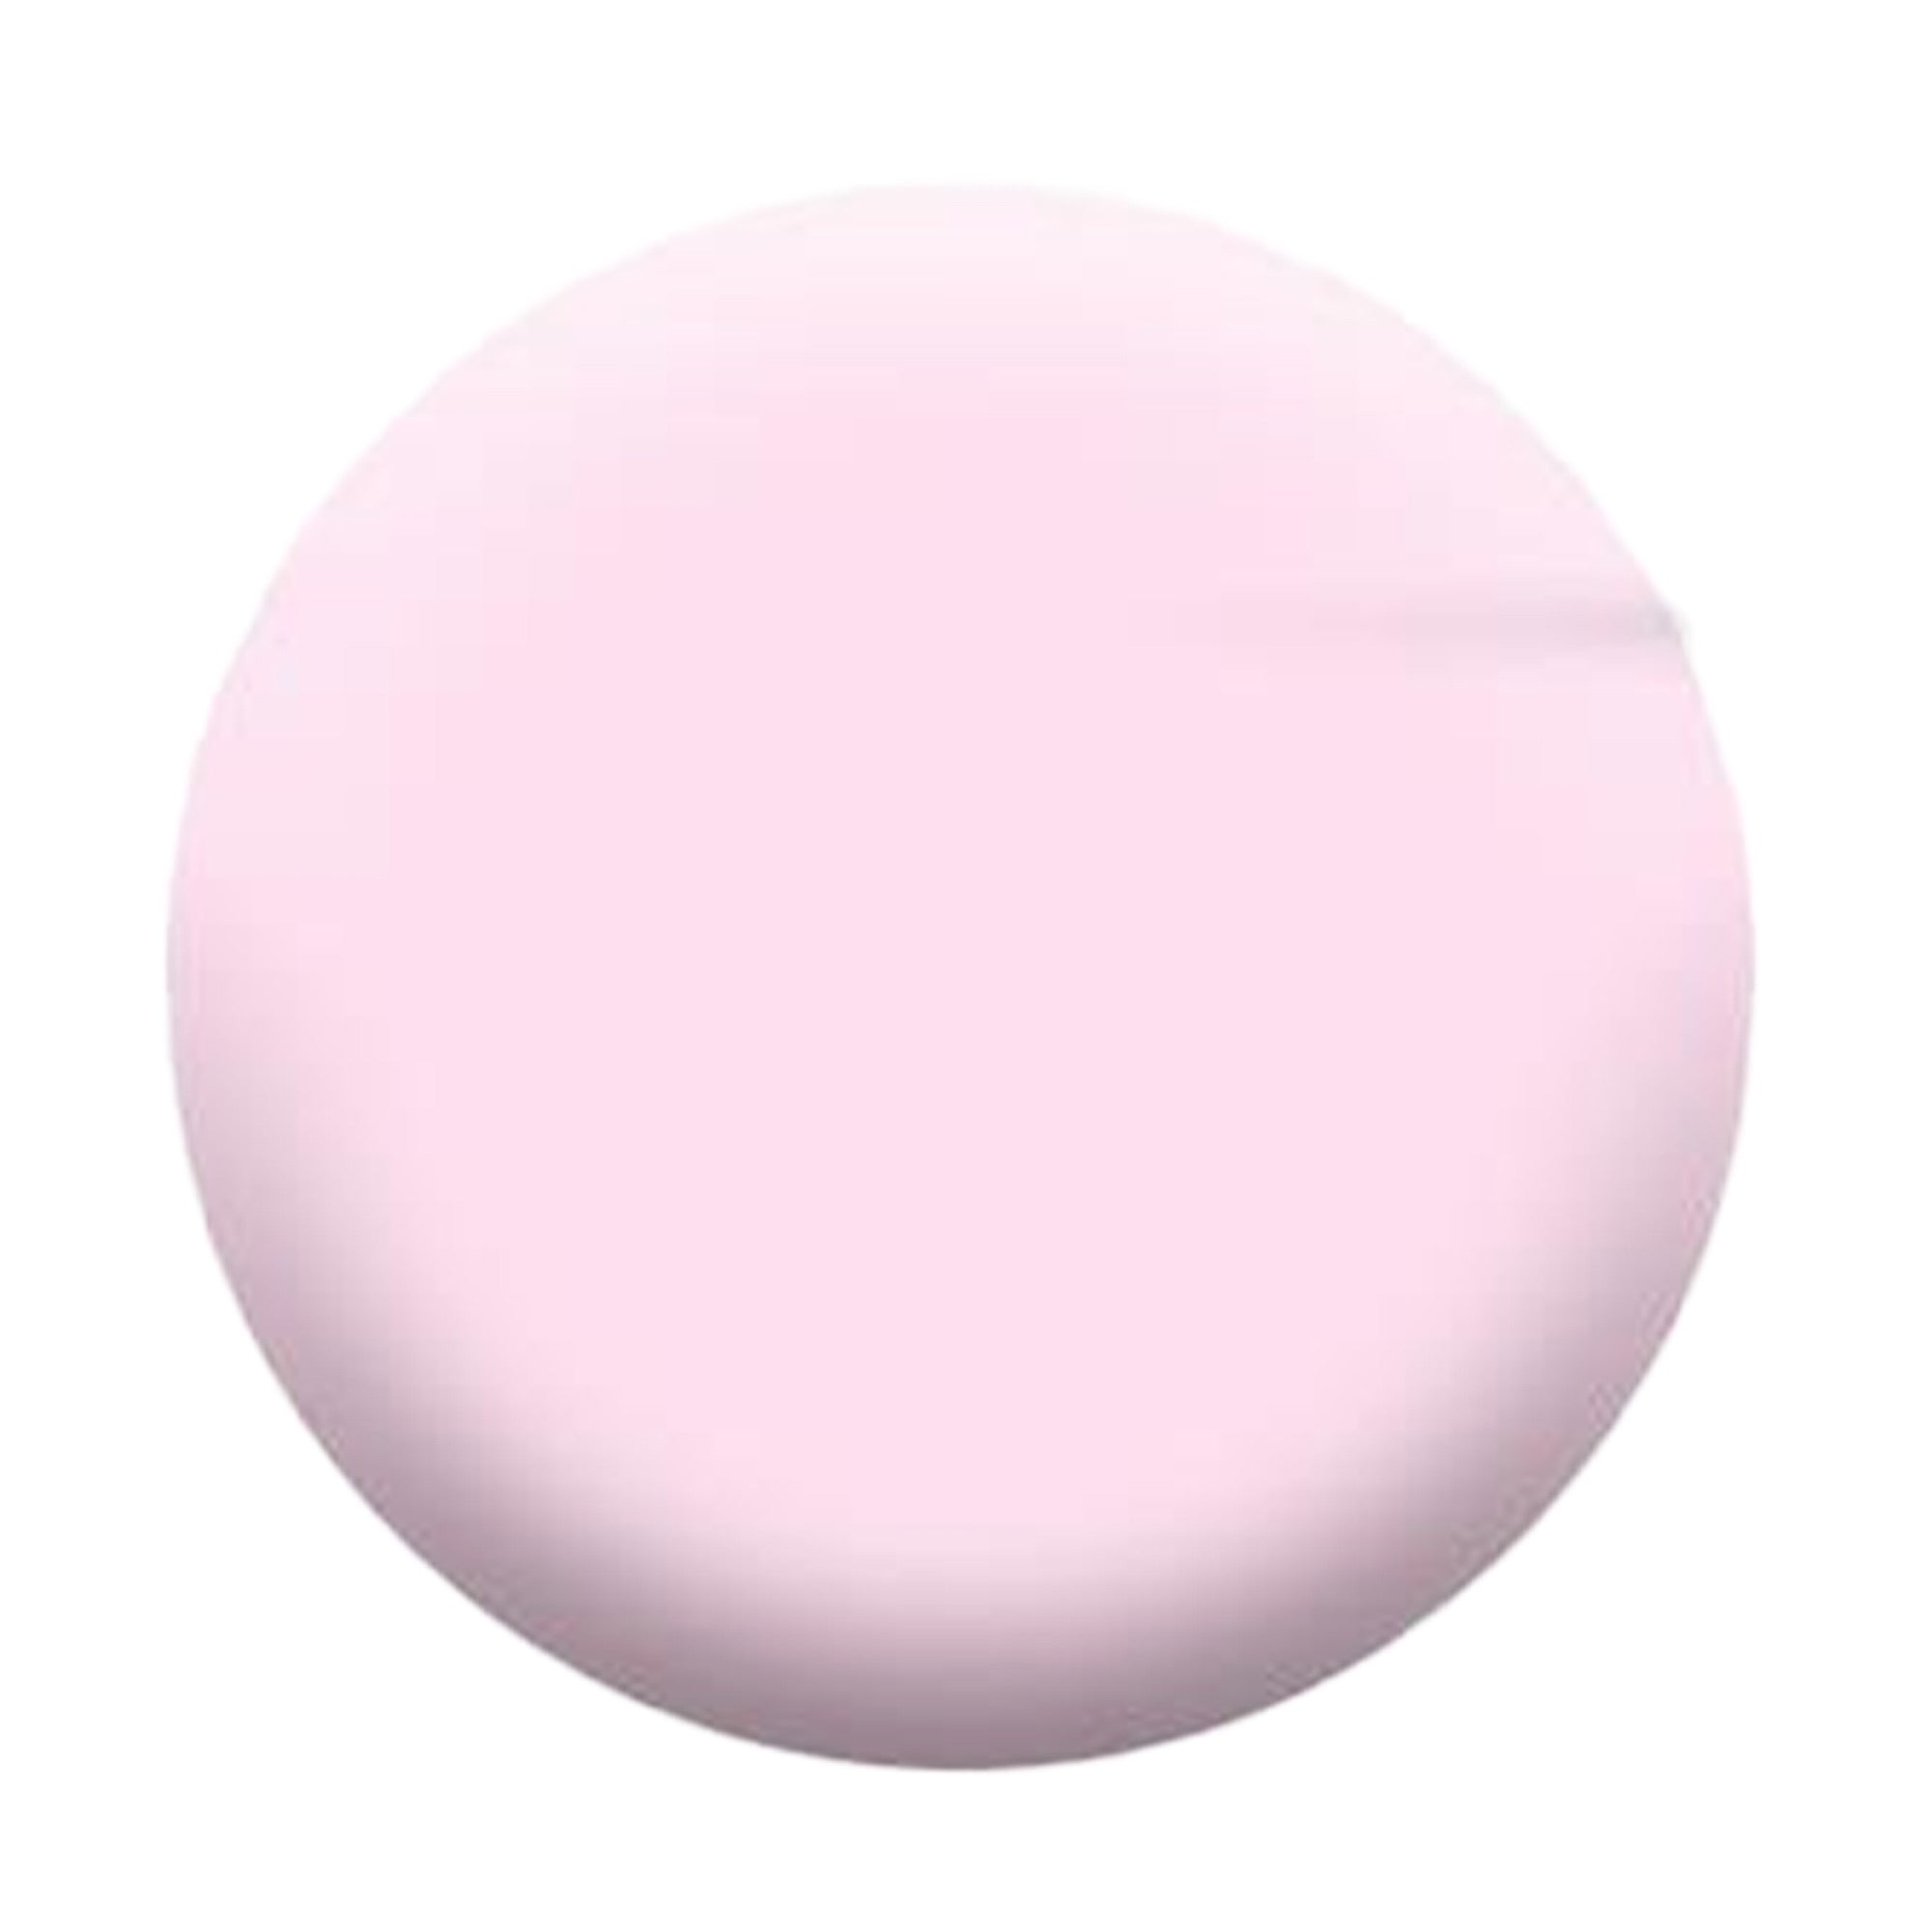 Alix Avien - Nail Polish No.74 (Pink Halo)